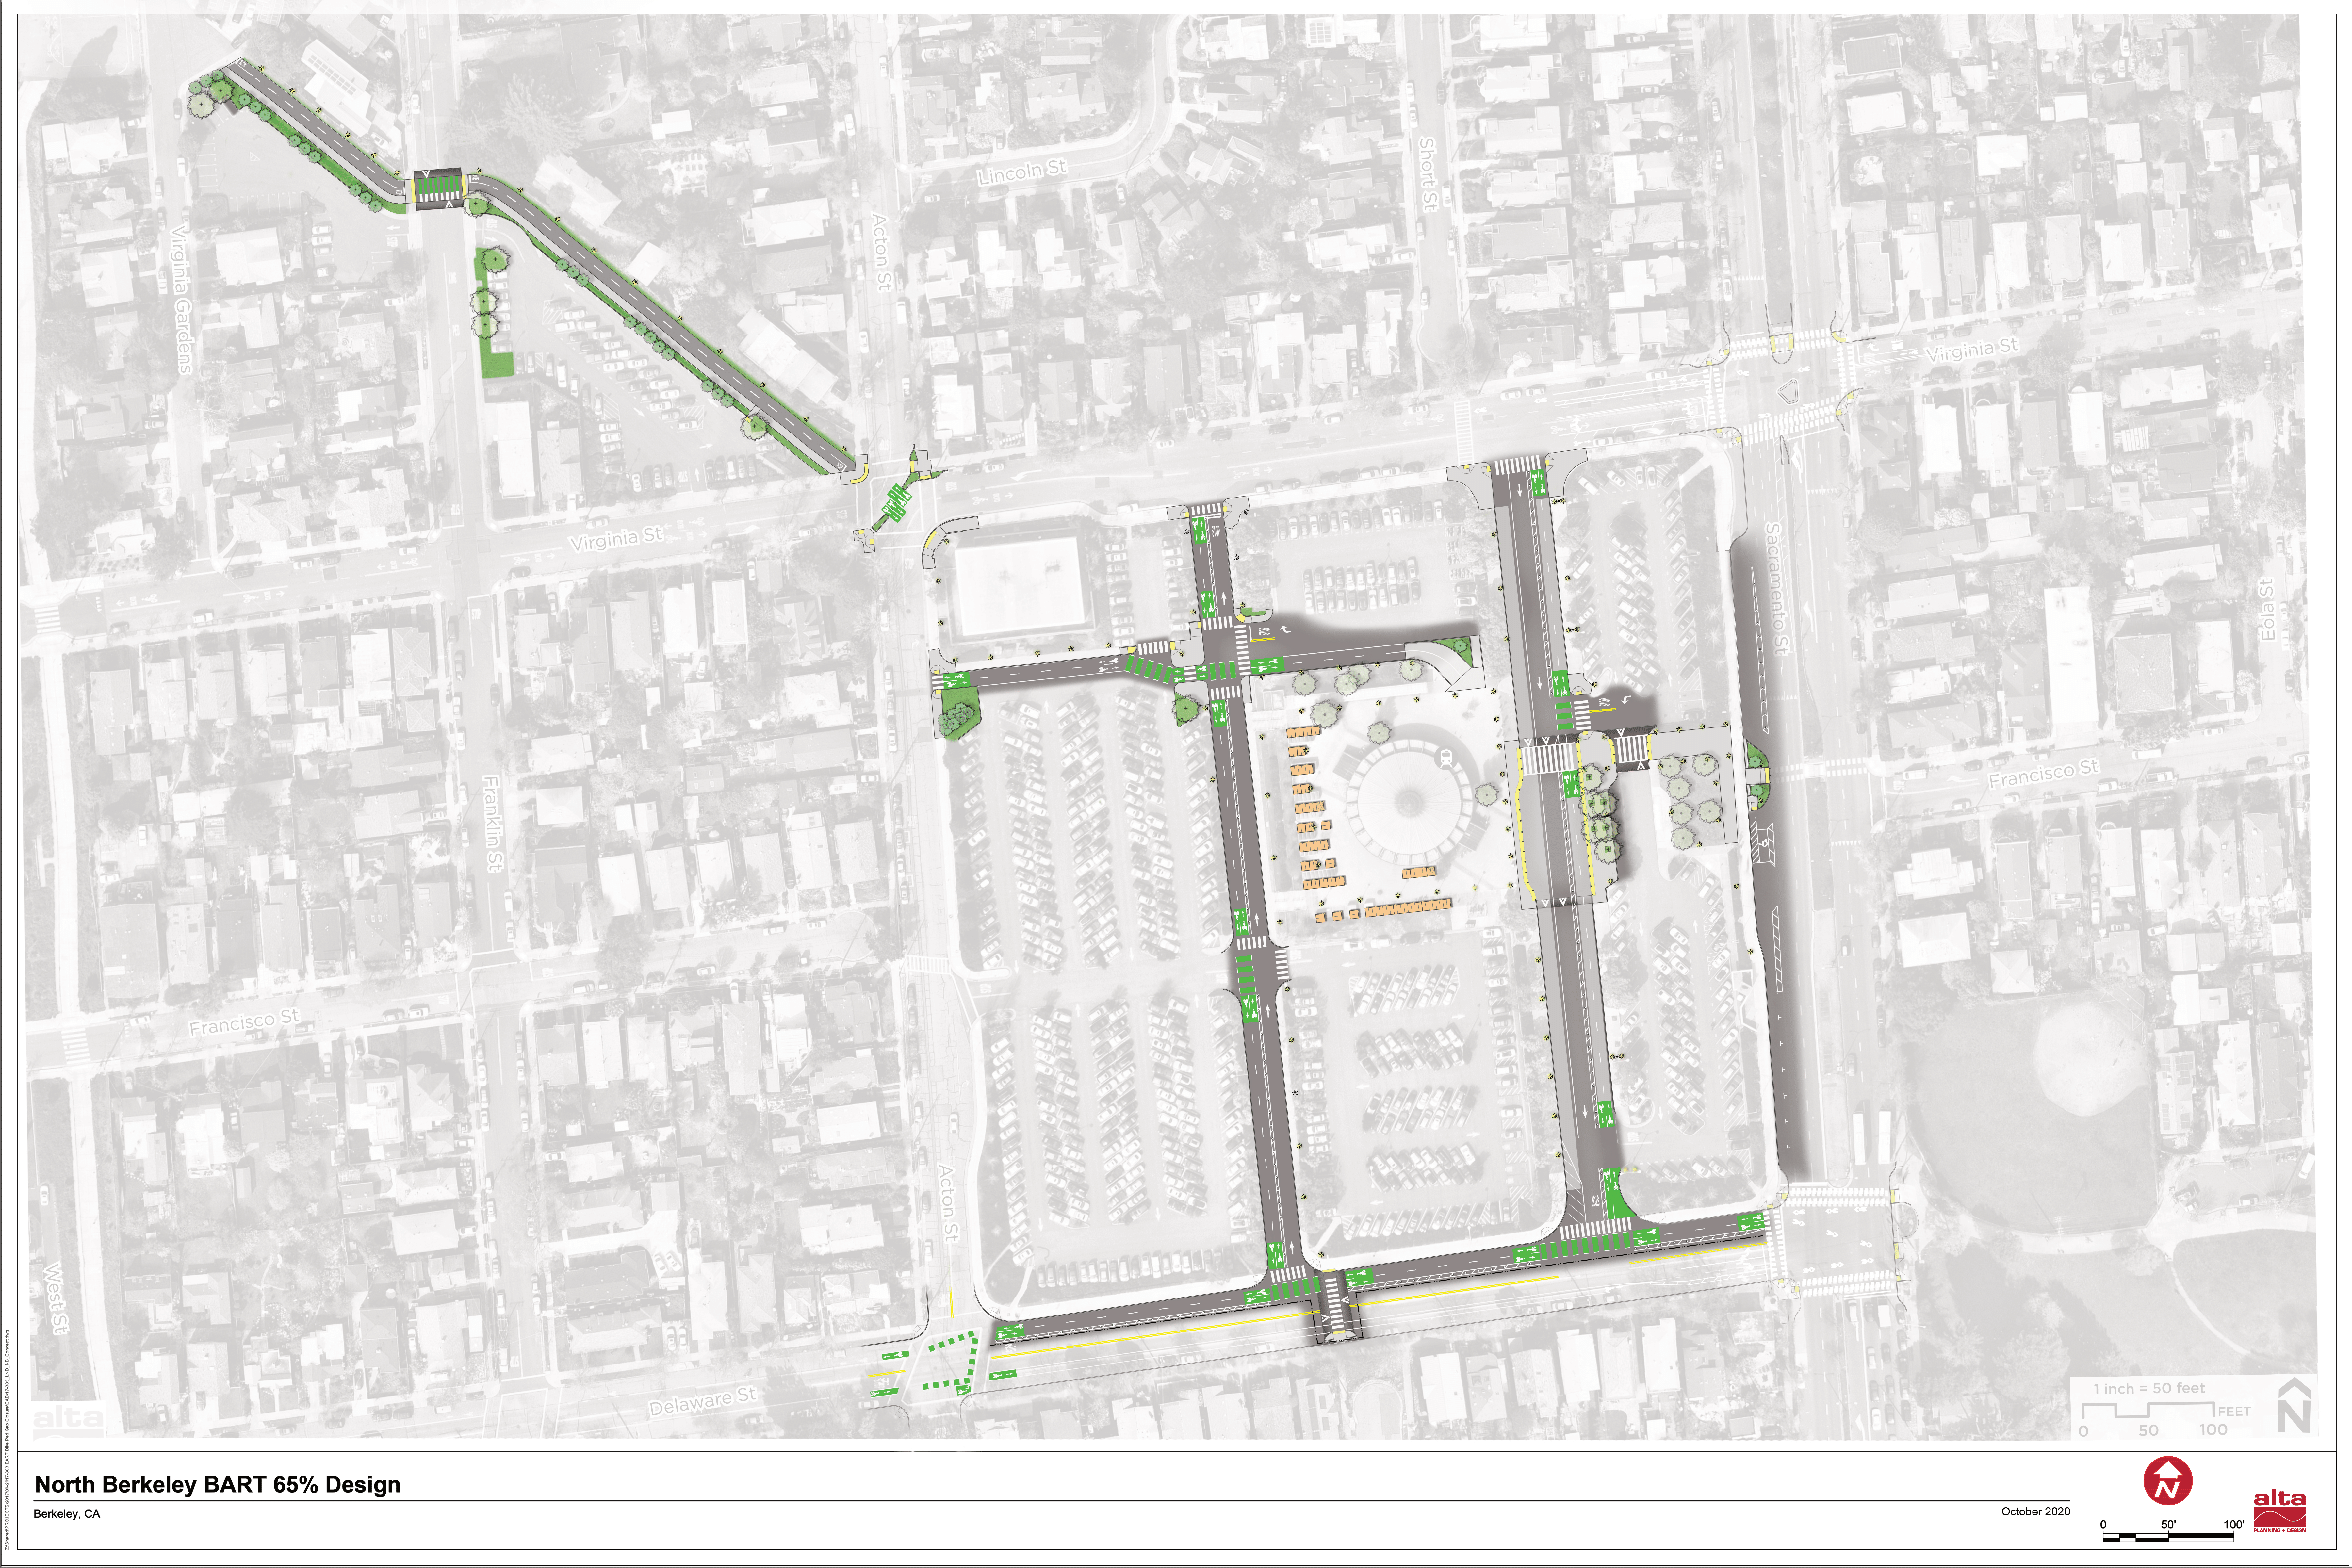 North Berkeley Design plan rendering